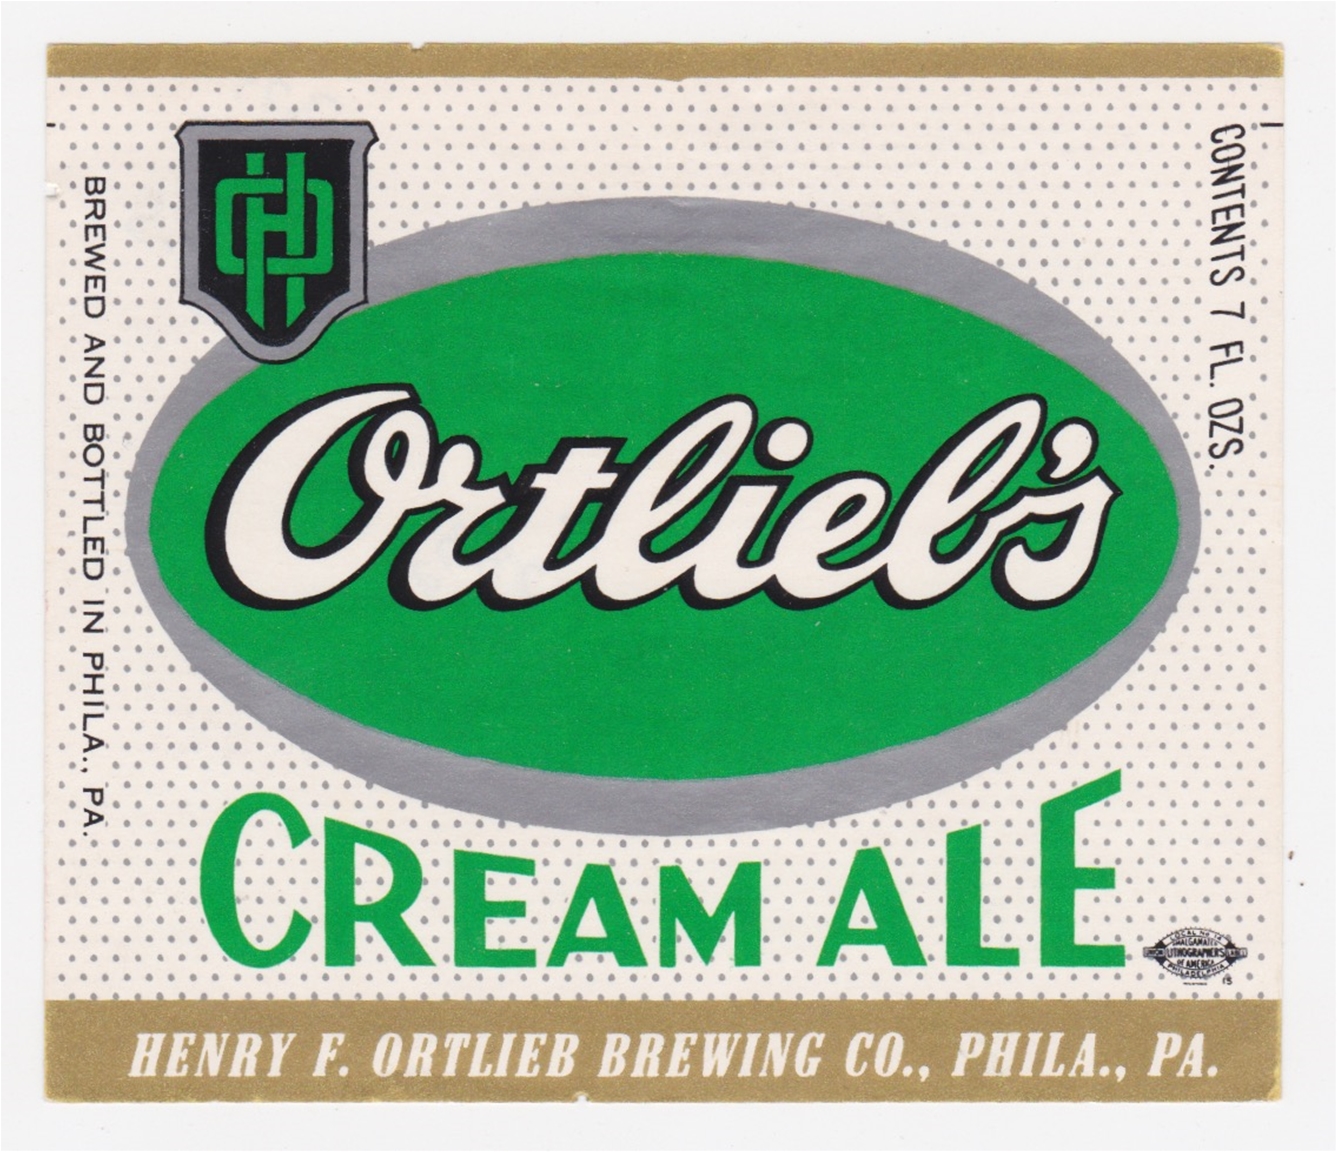 Ortlieb's Cream Ale Label